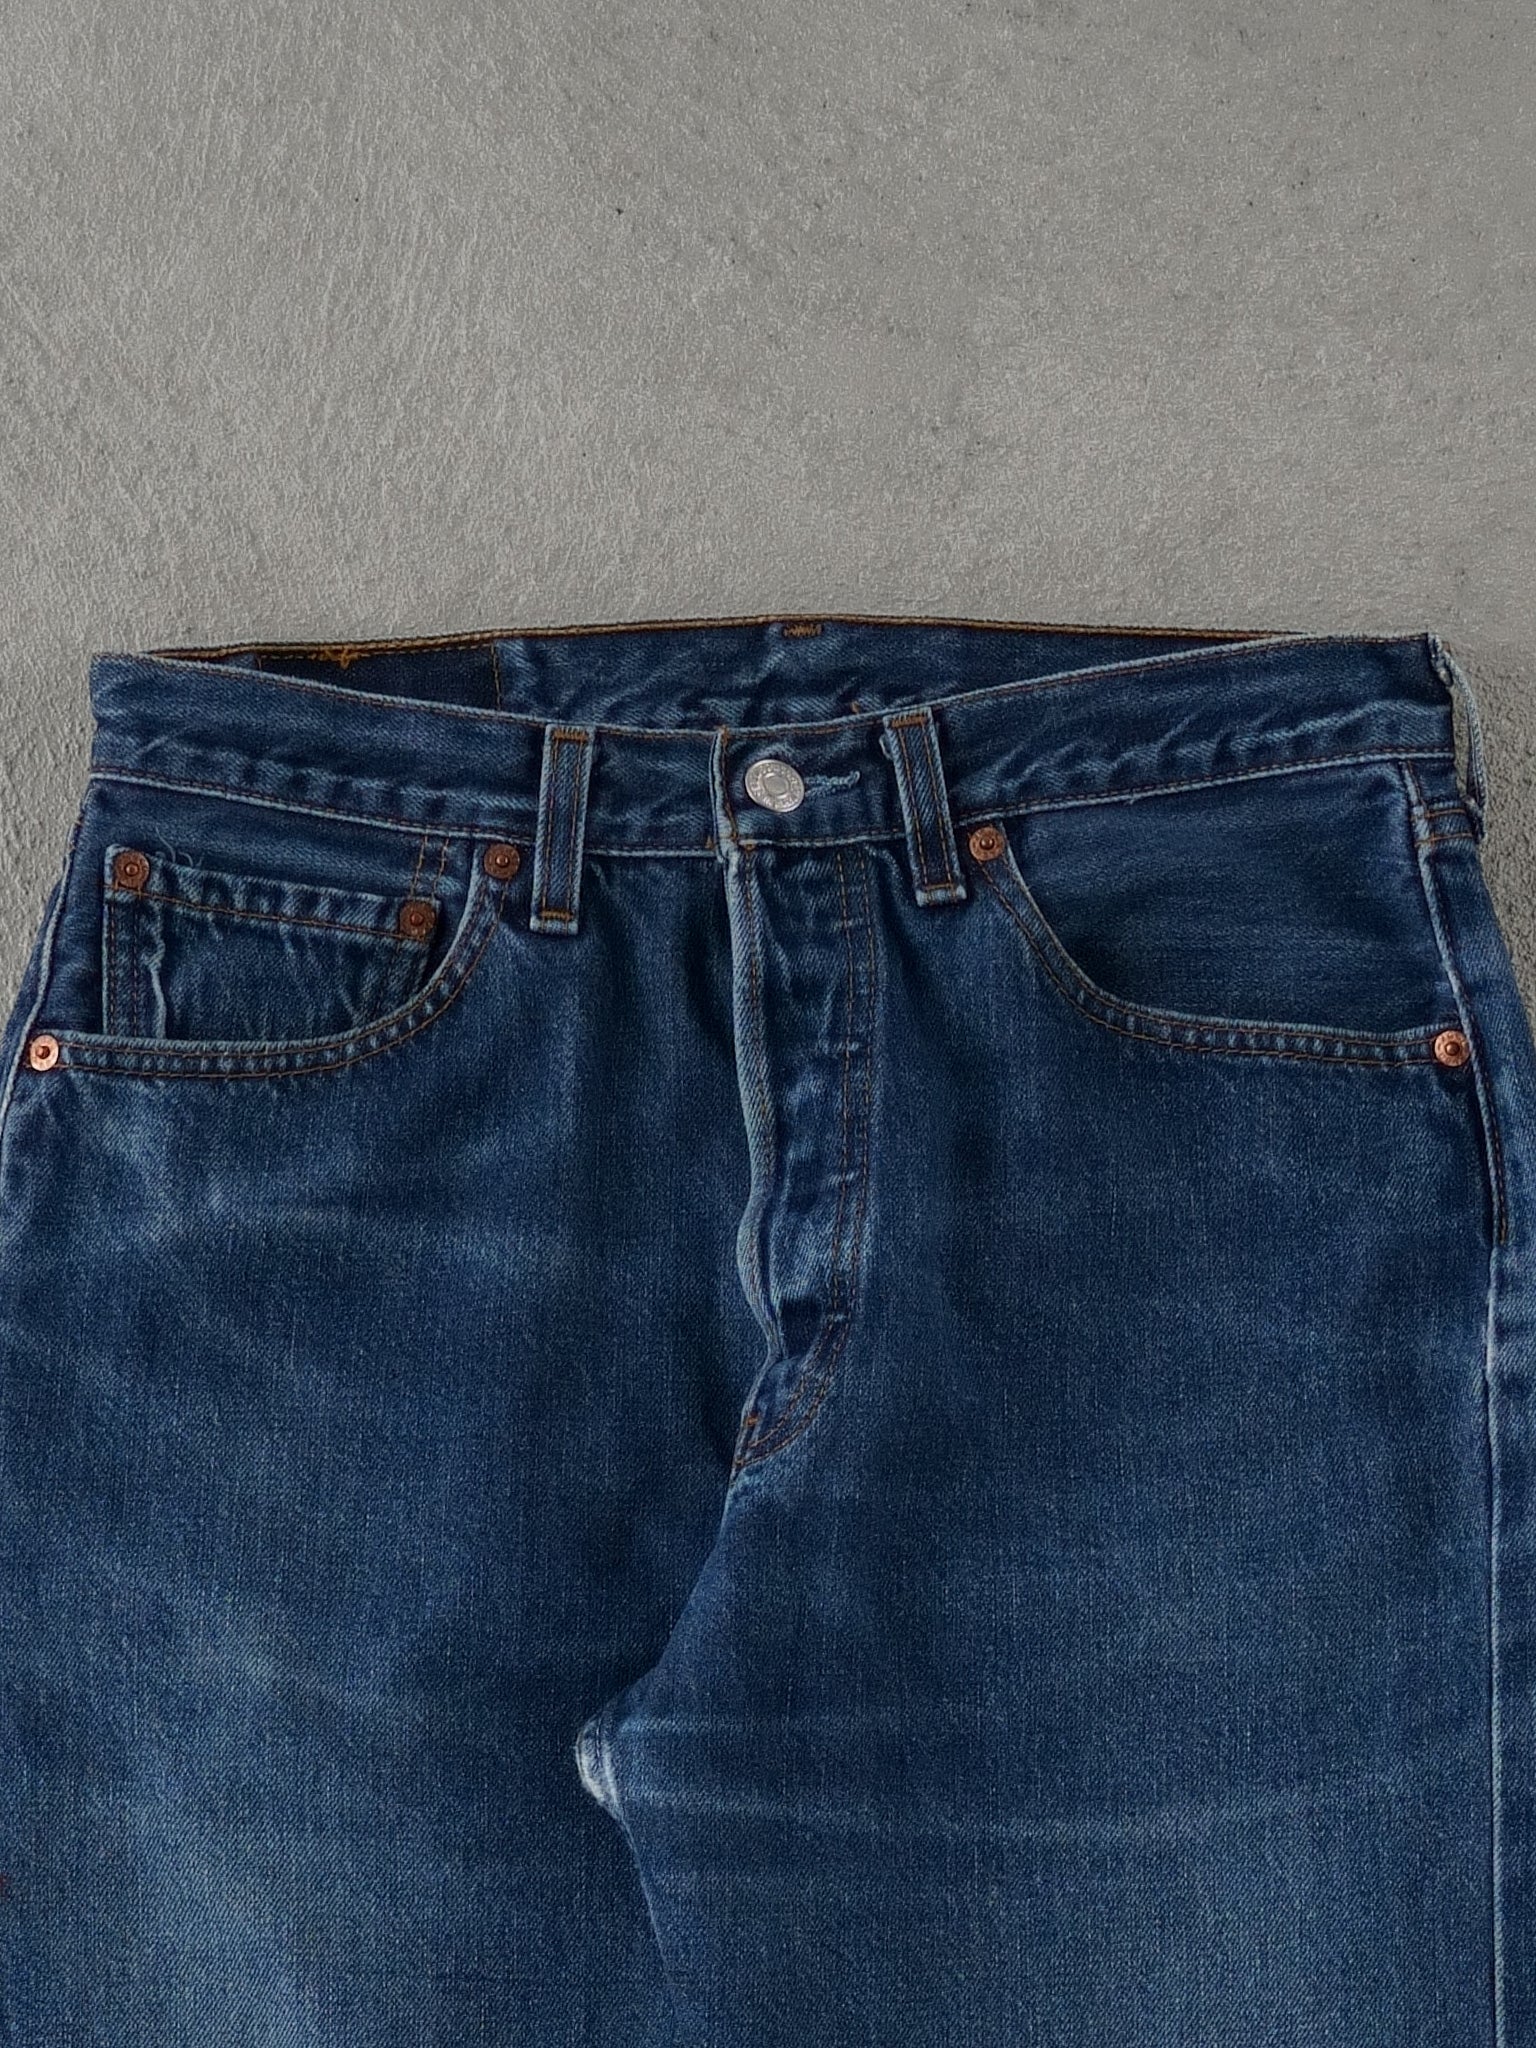 Vintage 90s Blue Levi's 501 Denim Jeans (31x30)